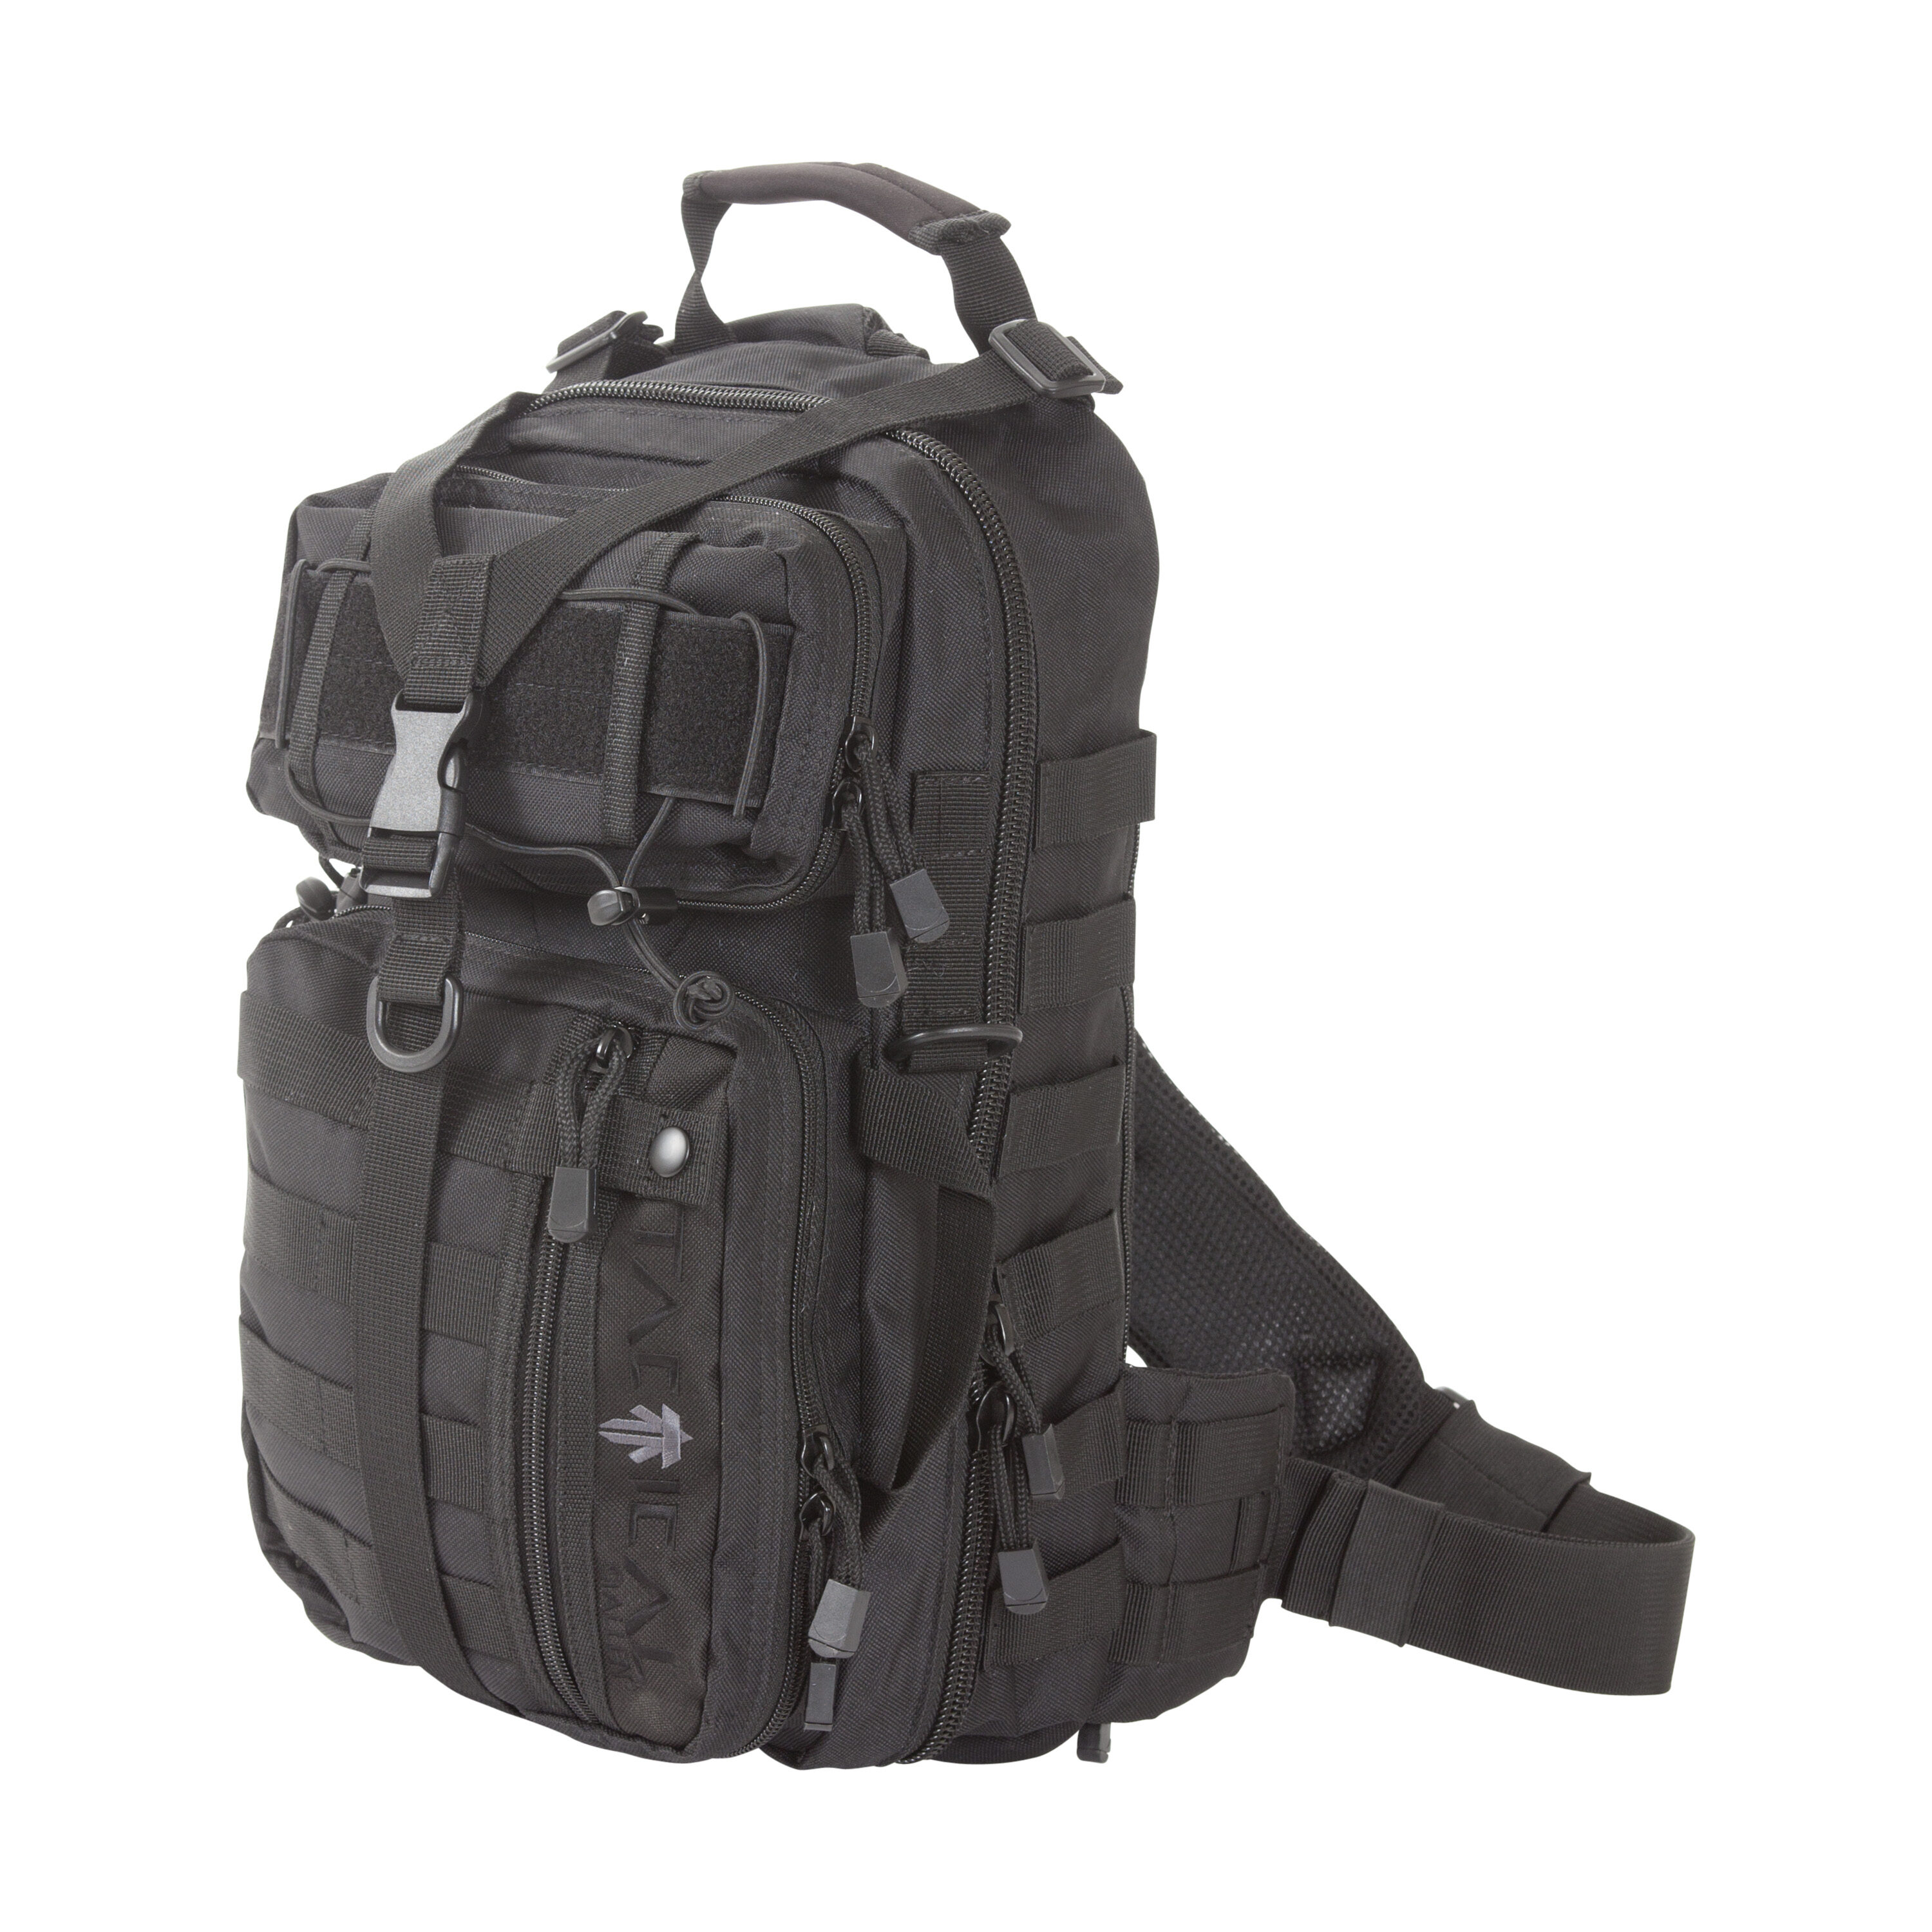 Blackhawk Enhanced Battle Bag Sling Pack 60BB01BK Nylon Strike